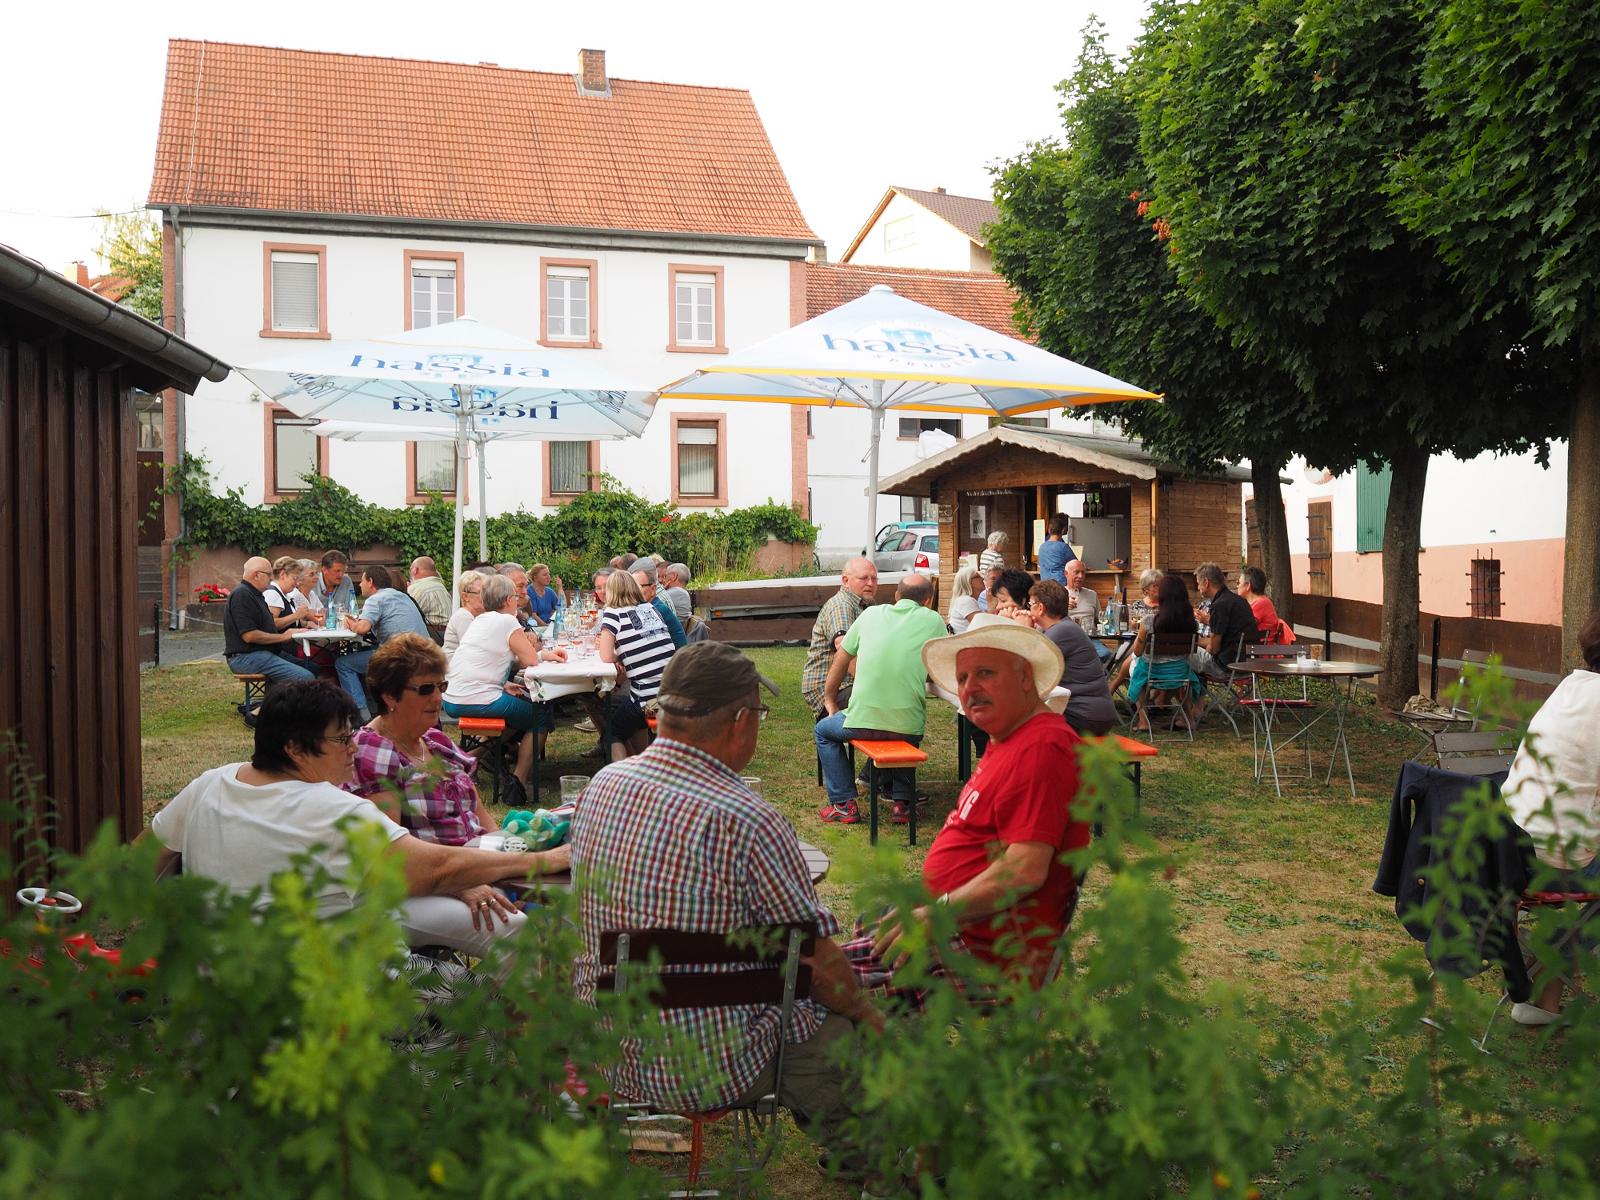 Der Hofausschank auf dem Weingut Lohmühle startet mit Live-Musik der Band “Fata Morgana”. An beiden Tagen gibt es Rabatt auf den Weinverkauf ab Hof.